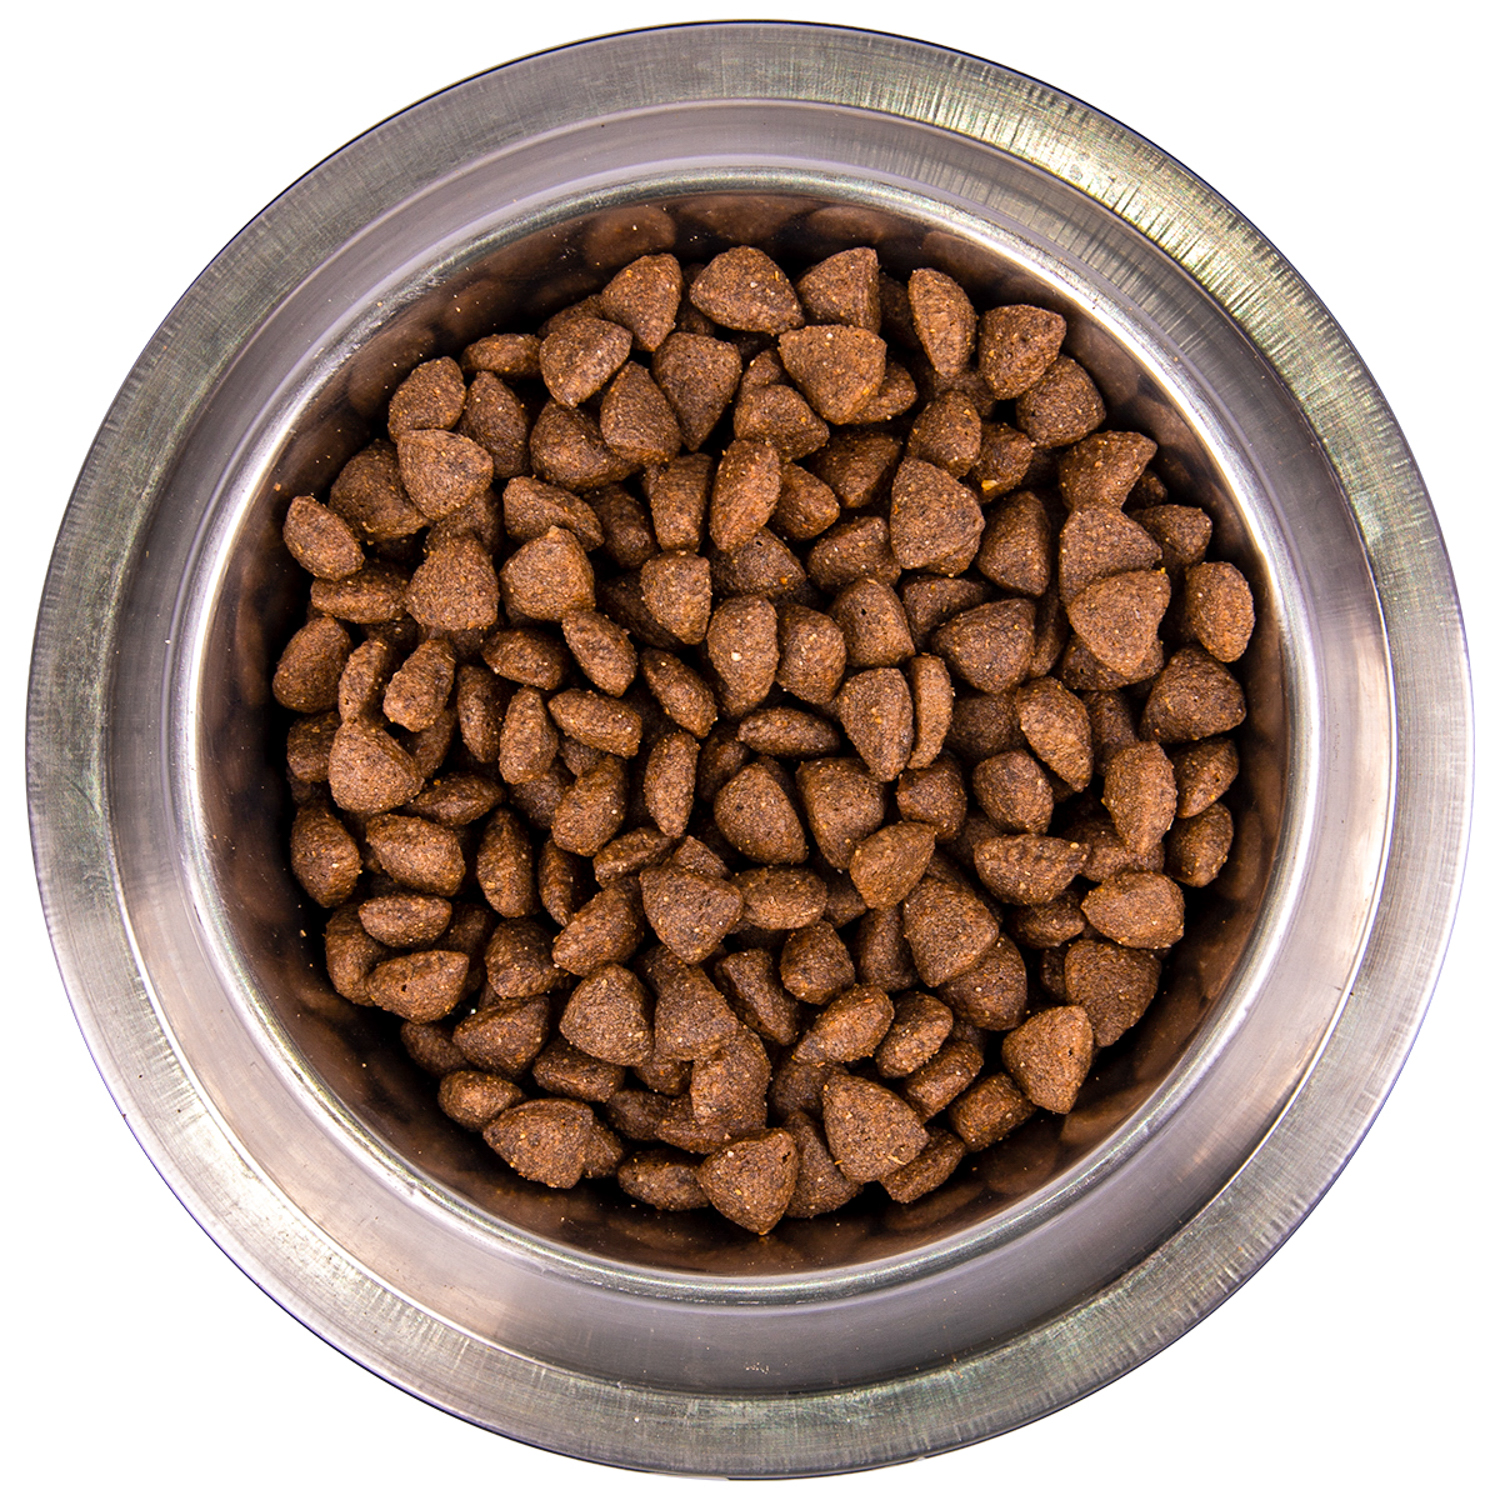 Сухой корм Monge Dog Speciality Line Monoprotein для взрослых собак всех пород, из курицы с рисом и картофелем 2,5 кг